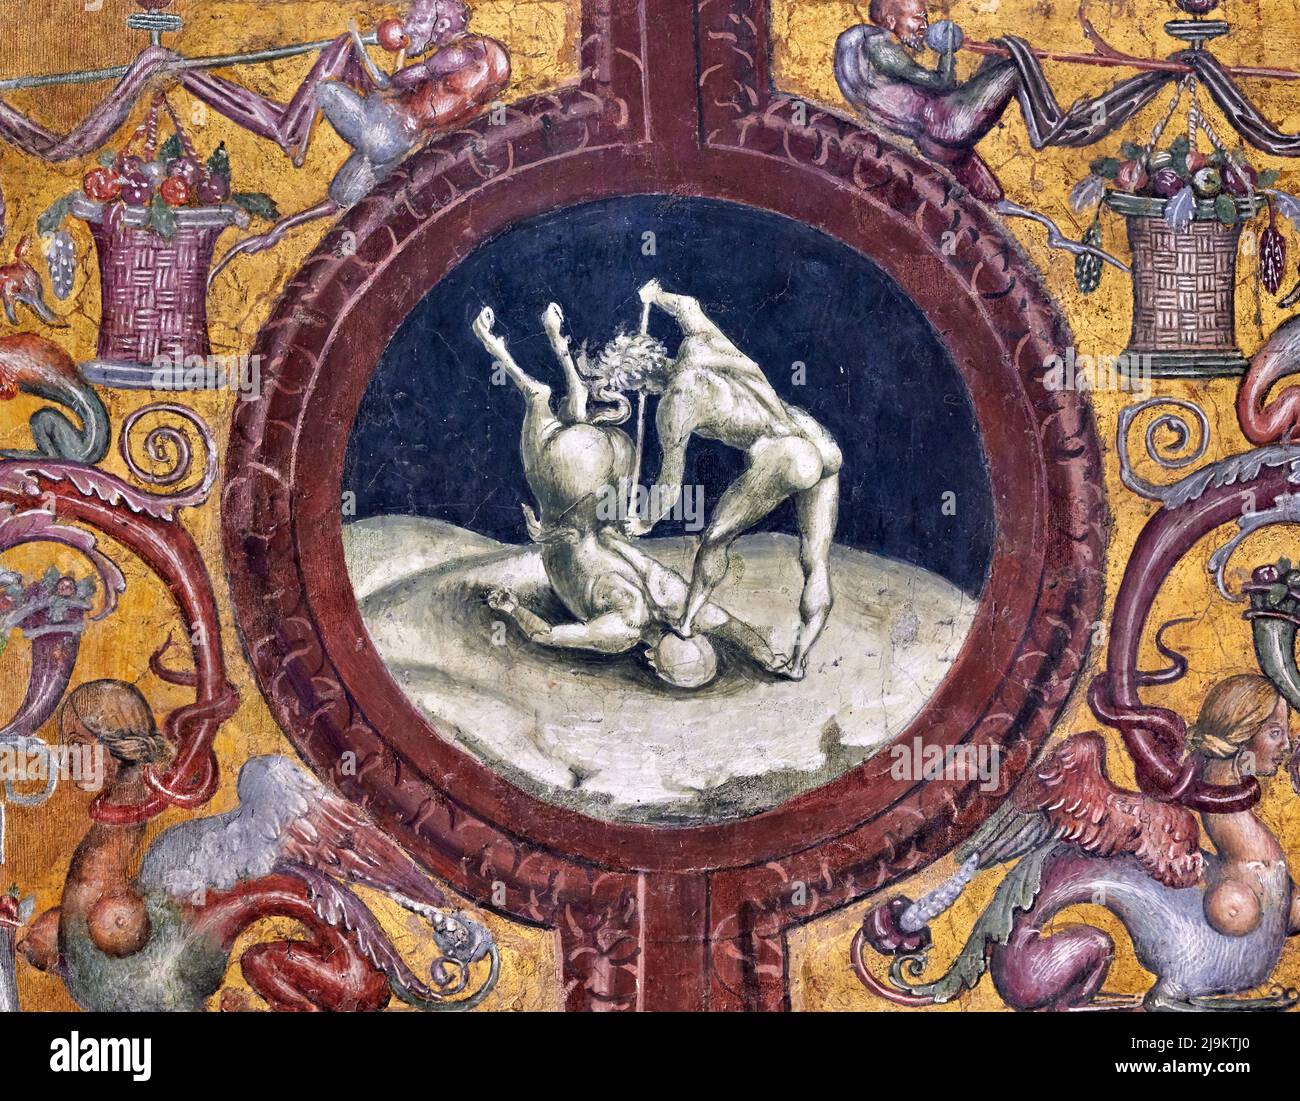 Eracle e il Centauro - affresco nella Cappella di San Brizio  - Luca Signorelli  - 1502   - Orvieto ( Terni), Italia, Duomo di S.Maria Assunta Stock Photo